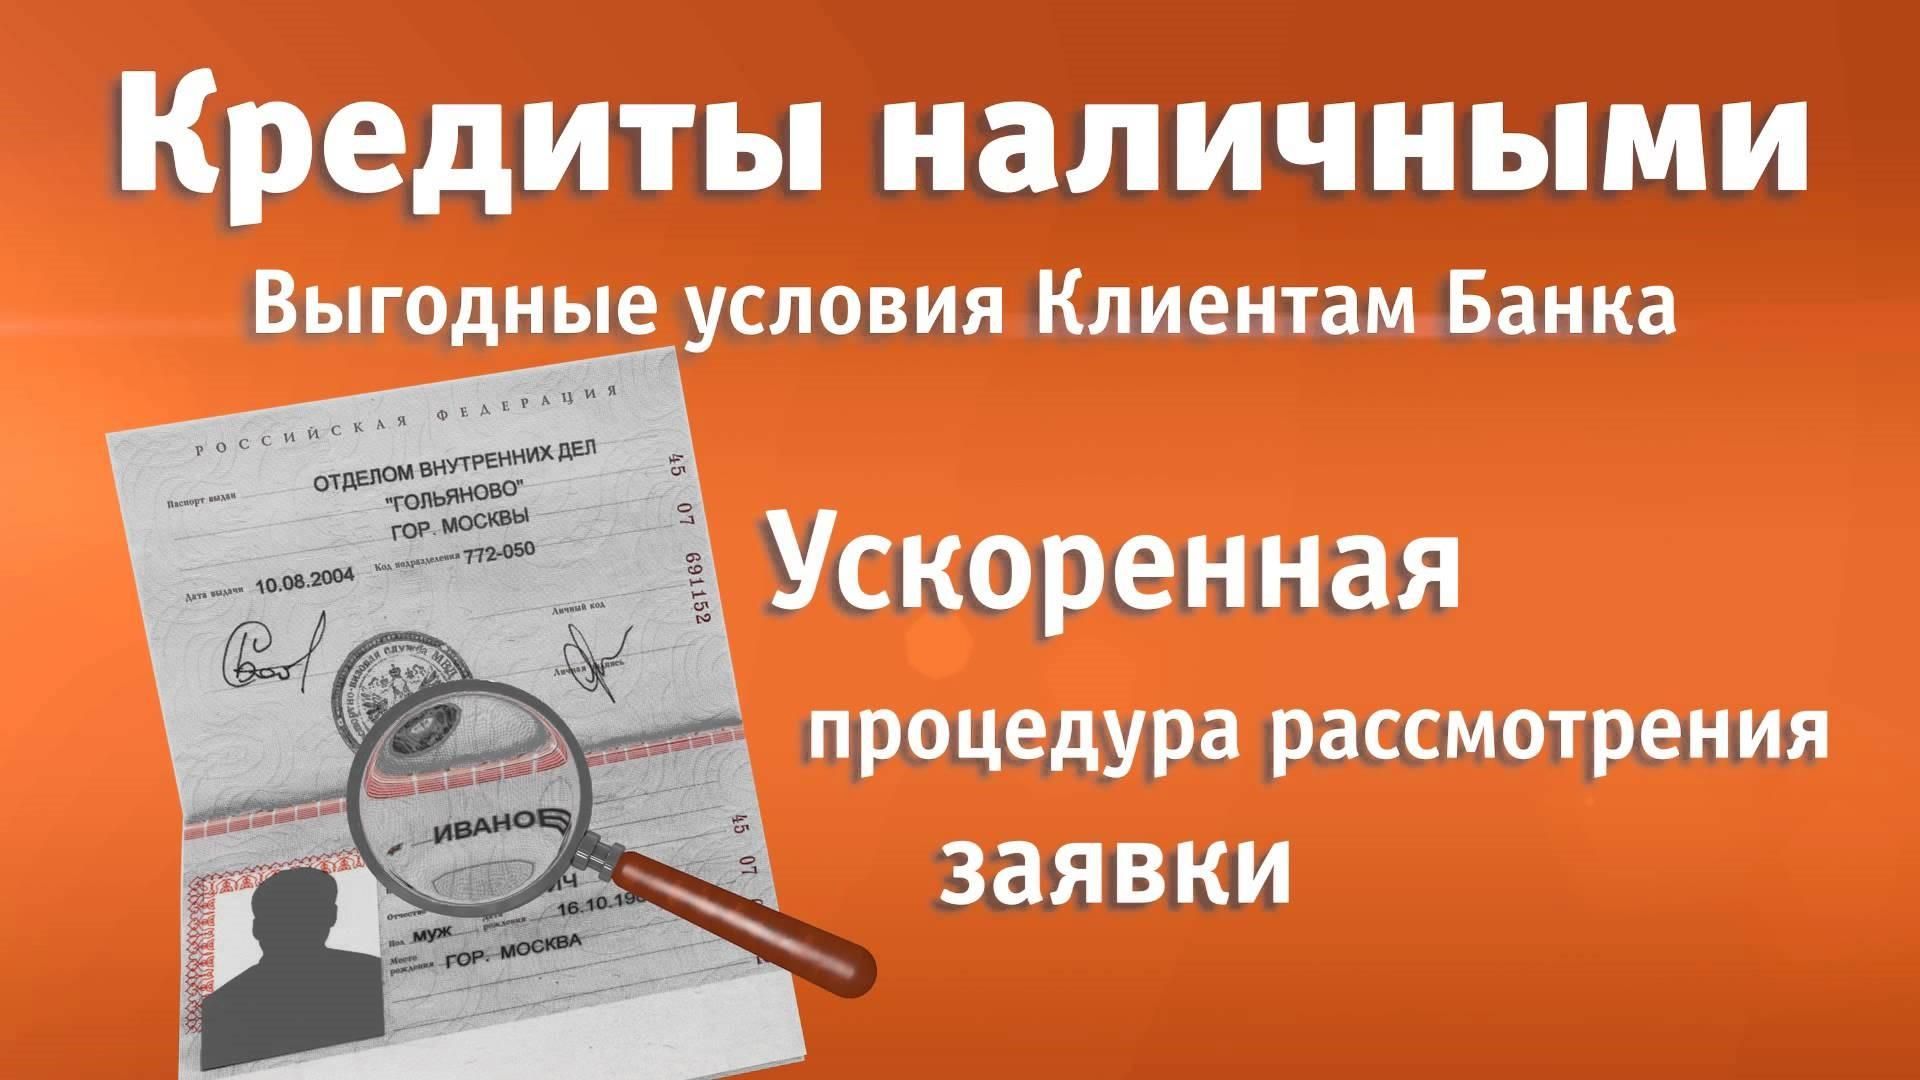 Займ по паспорту в Подольске наличными Мгновенно